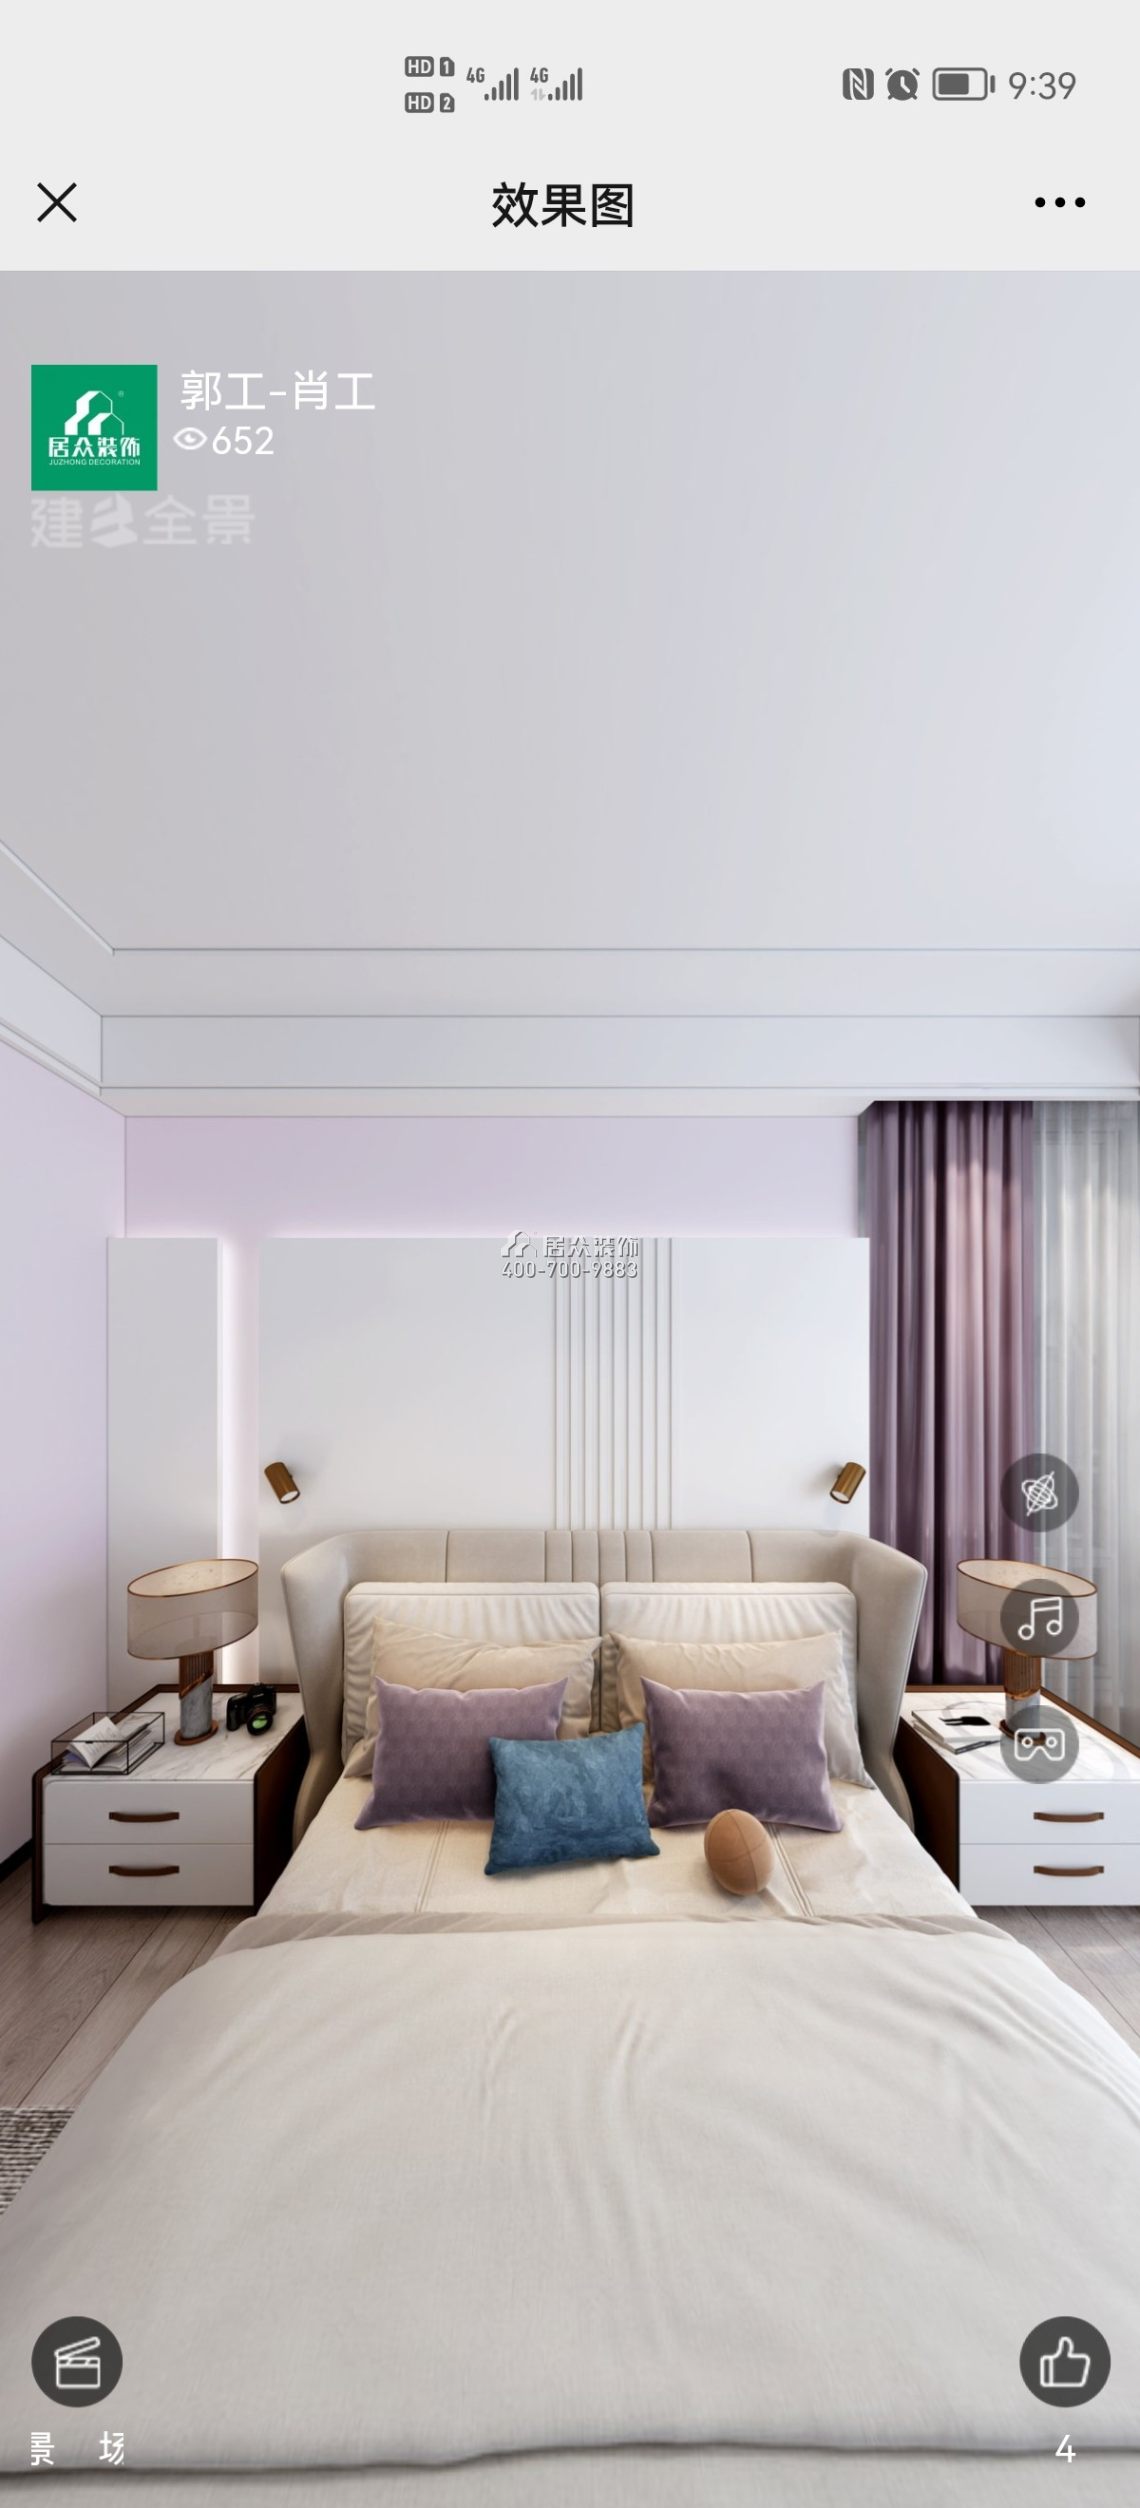 中怡城市花园120平方米现代简约风格平层户型卧室装修效果图